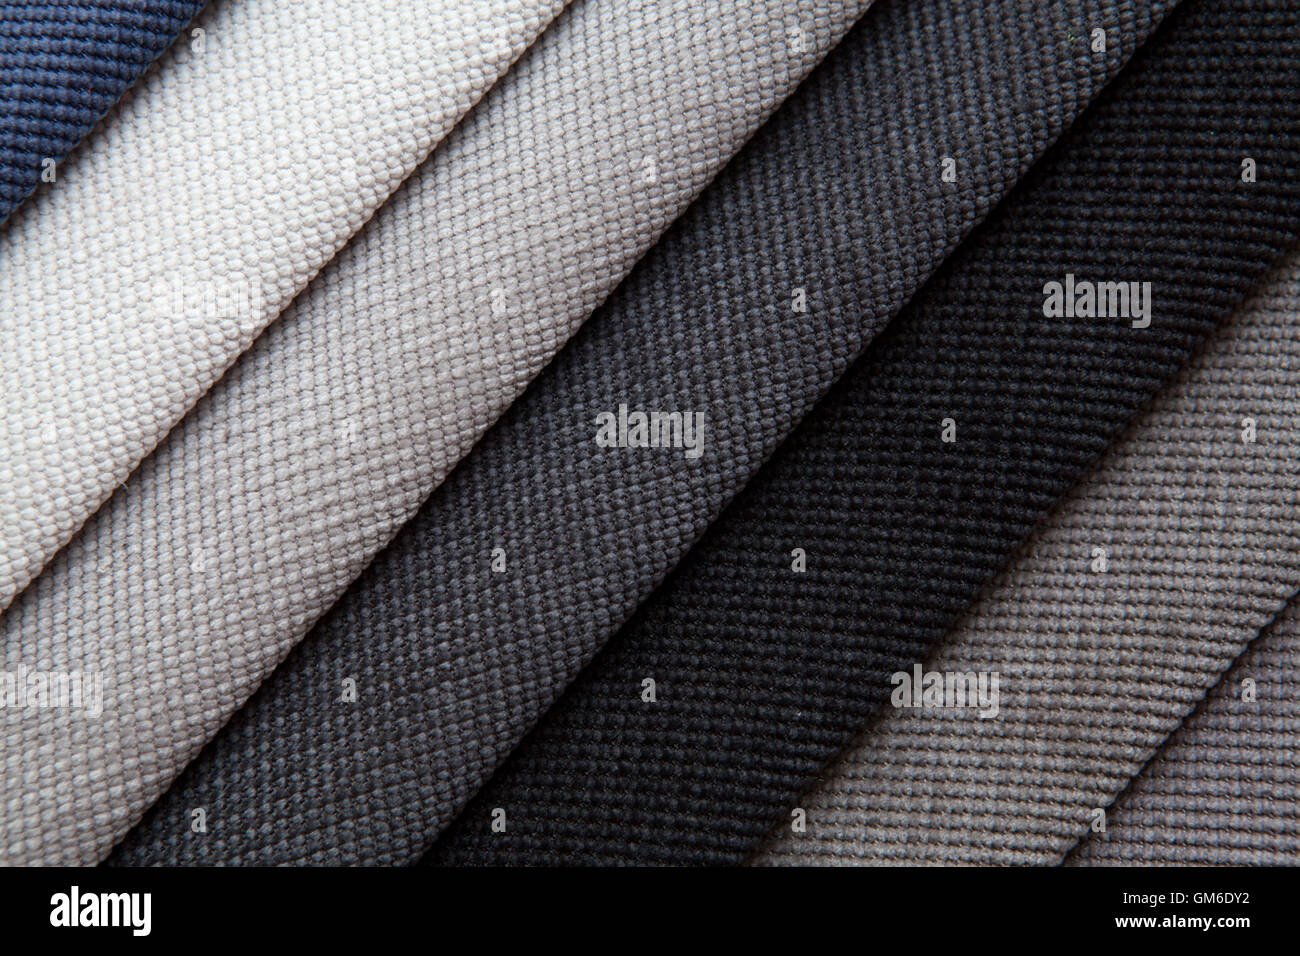 Shades of gray fabric Stock Photo